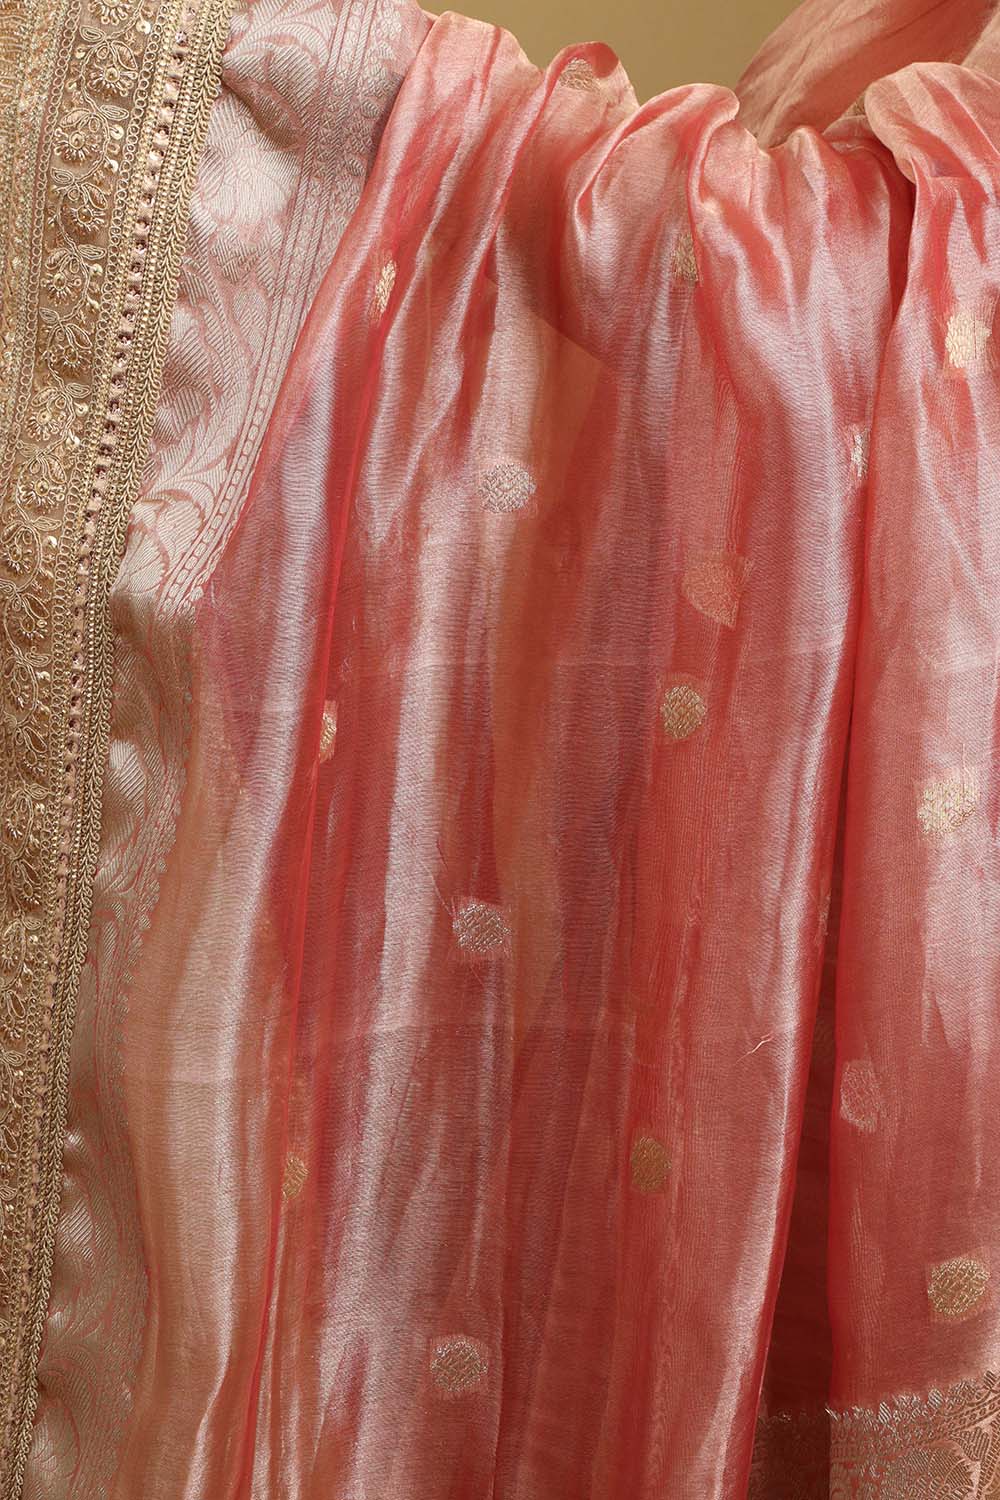 Exquisite Pink Handloom Banarasi Pure Tissue Silk Saree - Luxurion World